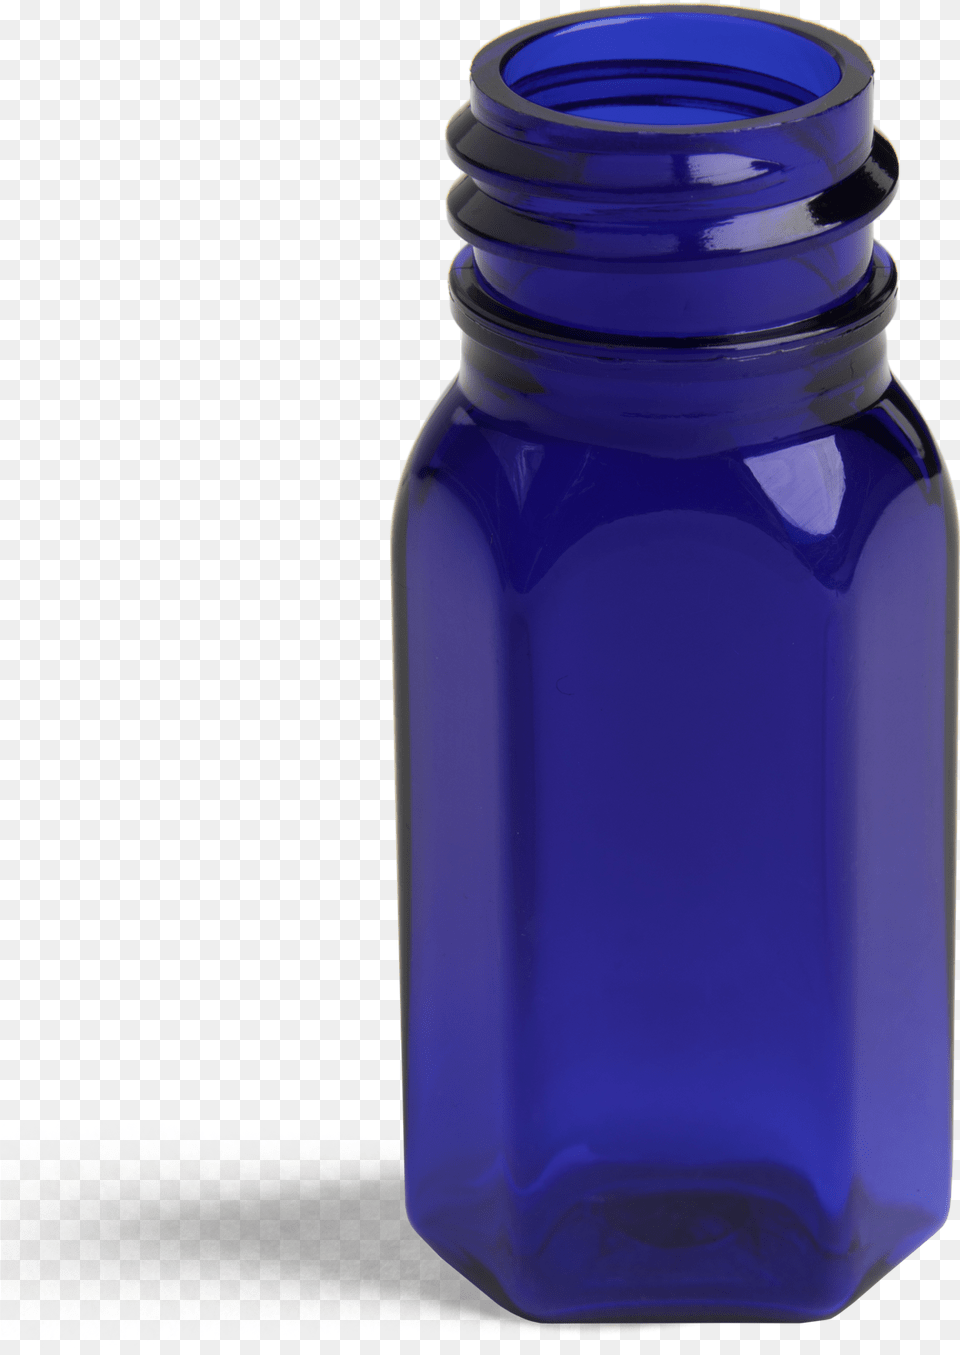 Oz Dropper Bottle Oval Glass Bottle, Jar, Shaker Free Png